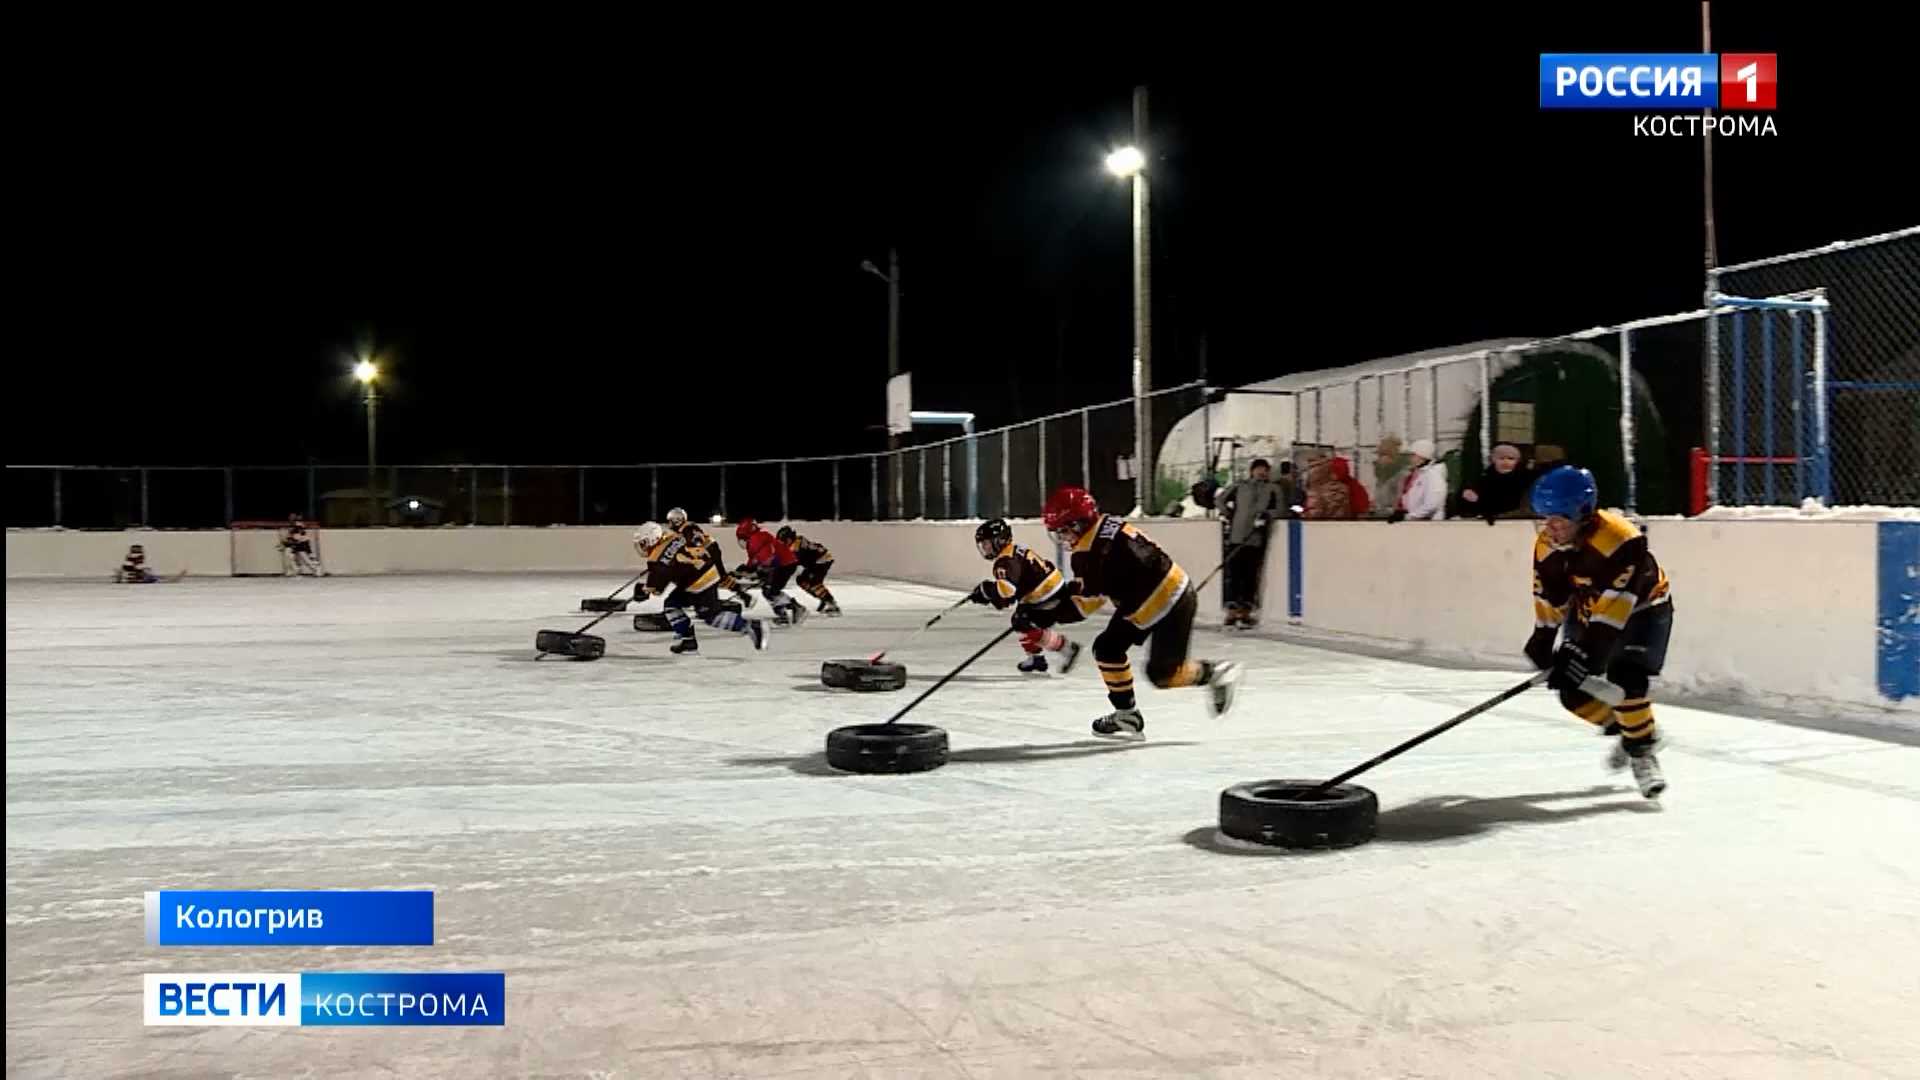 Юные костромские хоккеисты гоняют клюшками по льду автомобильные шины